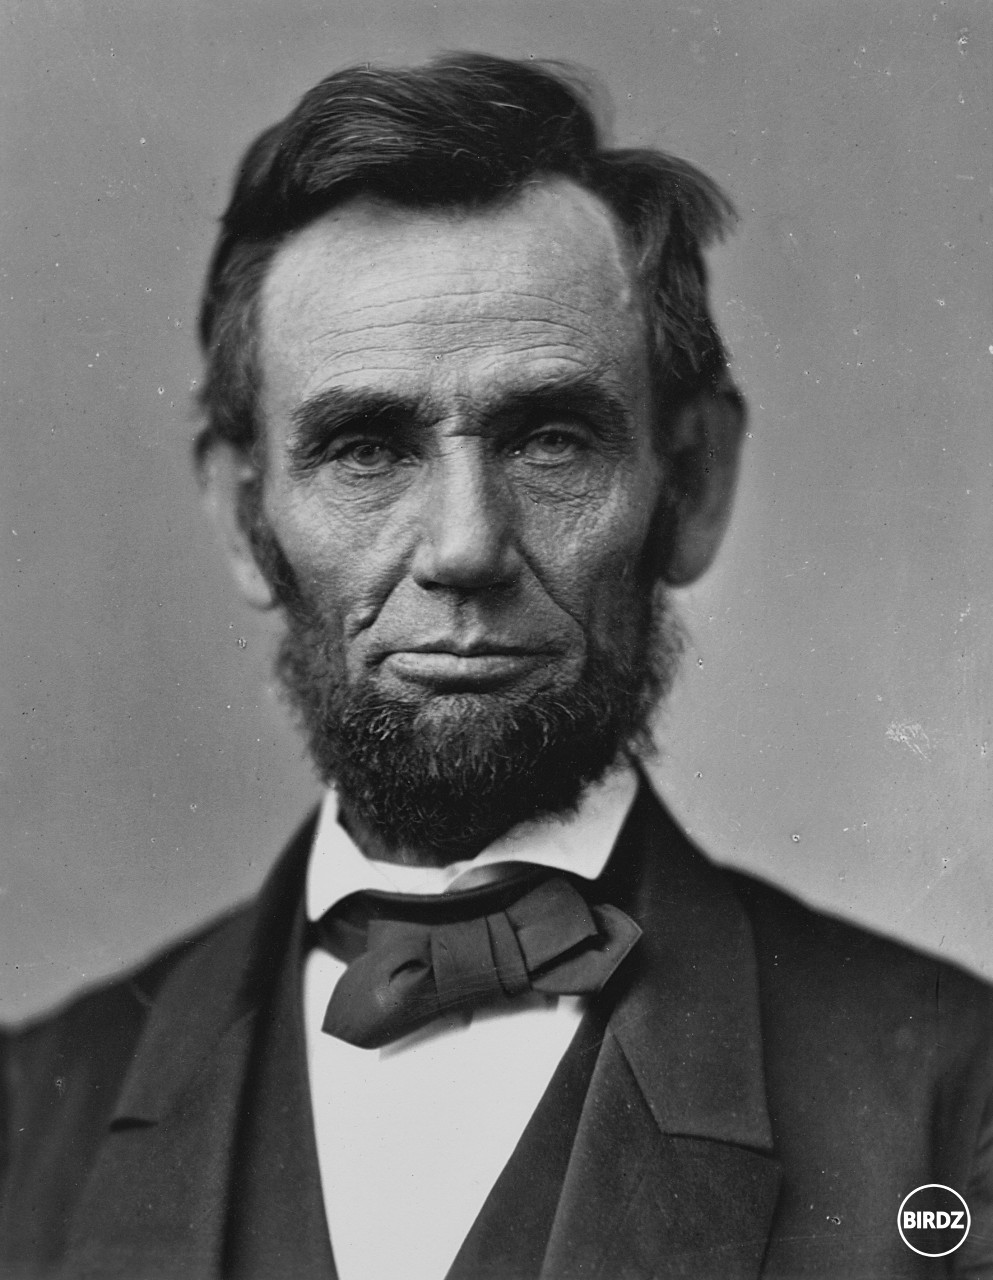 Pan Abraham Lincoln jedoznacne najlepsi prezident USA v historii pretoze zrusil otroctvo a dal volebne pravo cernochom cim sa postaral o demokraciu. Vzdy dodrziaval zakony a ctil si ustavu. Bol aj vyborny pravnik